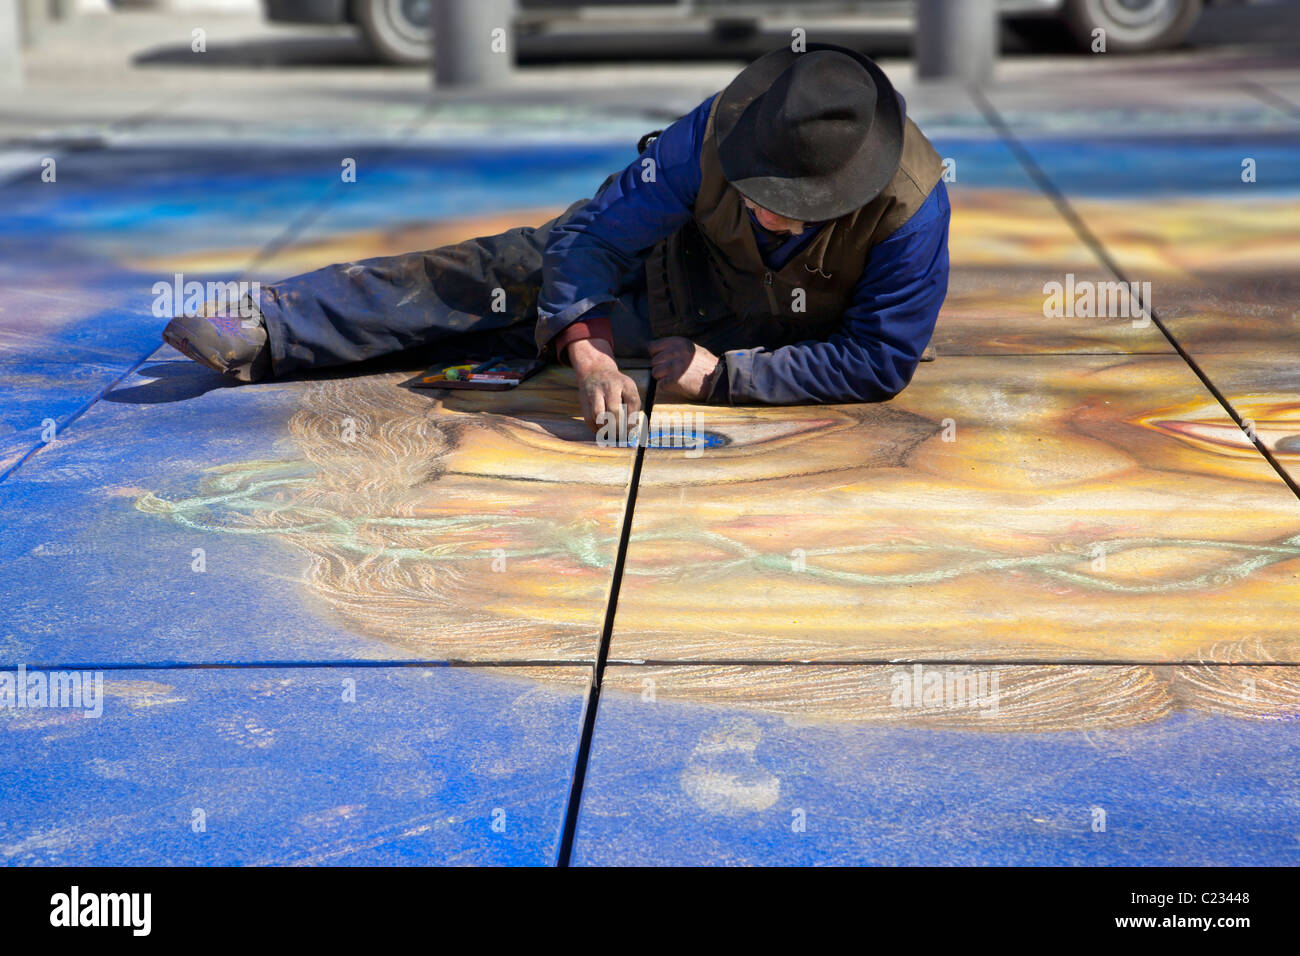 Un artiste de rue Paris France travaille sur une peinture murale / Peinture / dessin dans un parc. Lupica Studio Banque D'Images